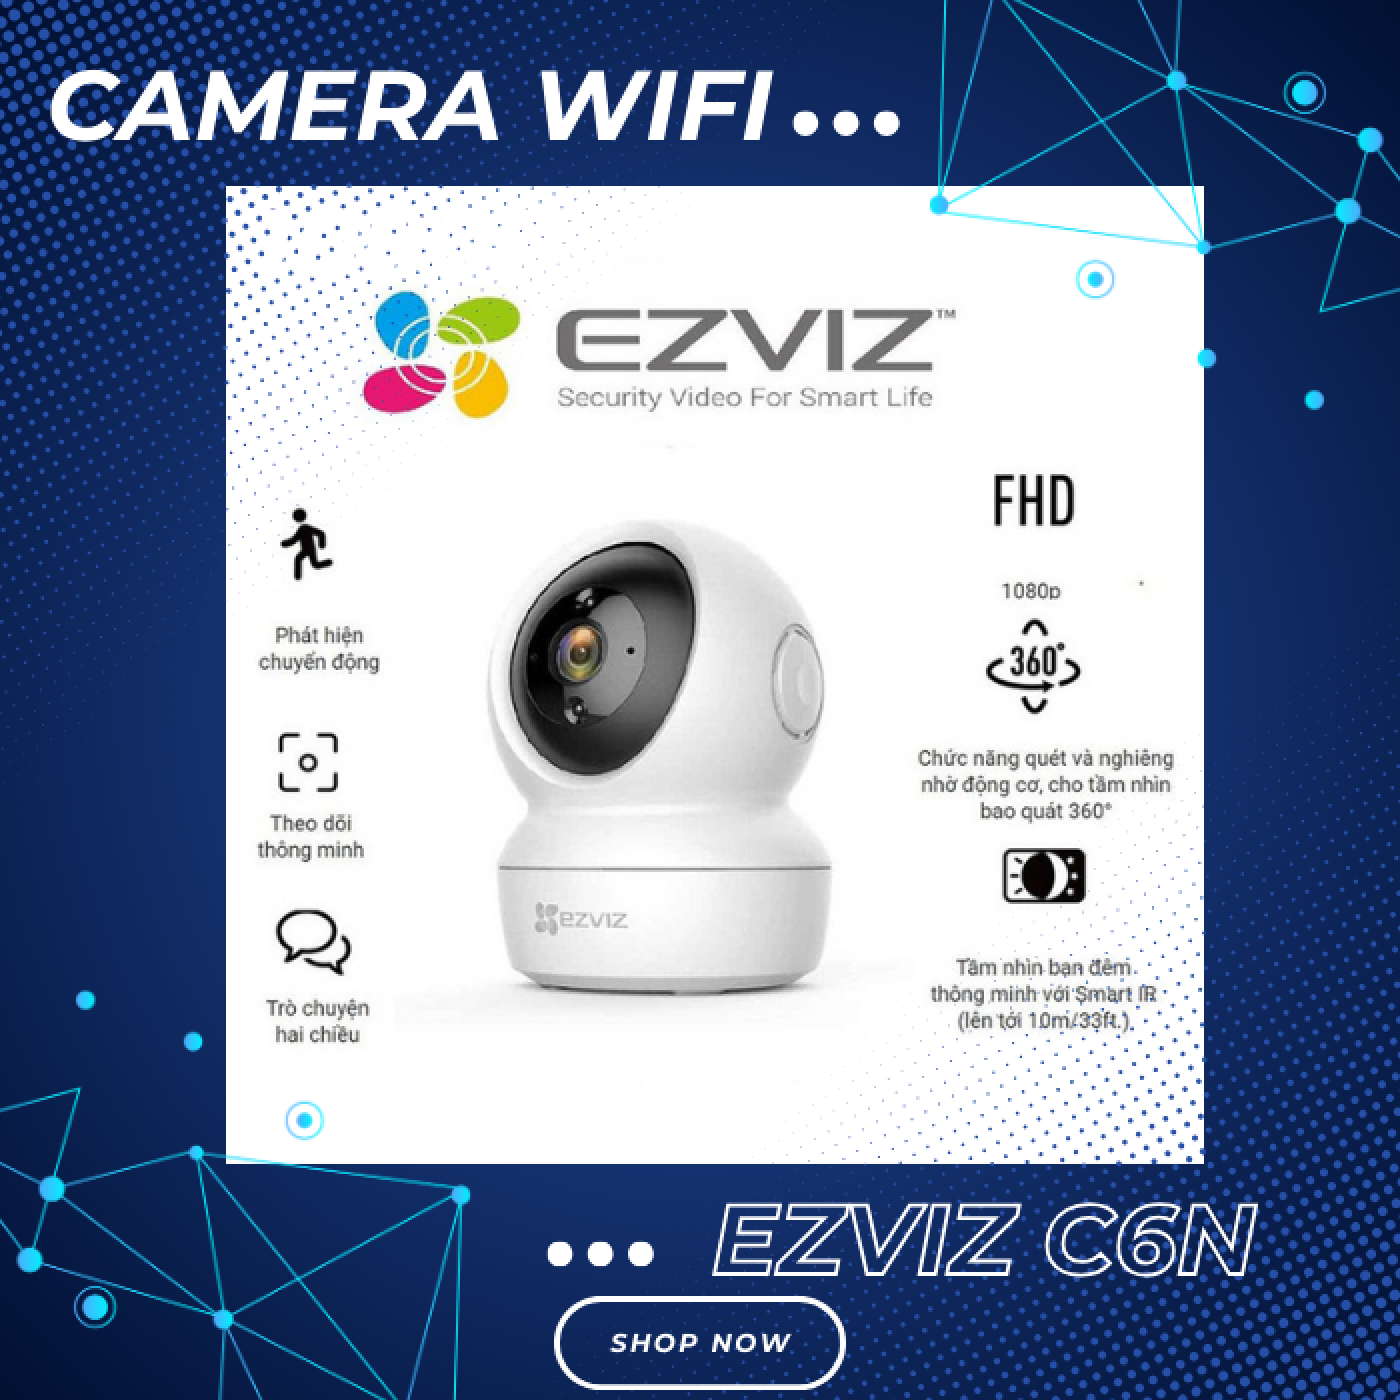 Camera wifi Ezviz C6N 2MP (Hàng chính hãng)